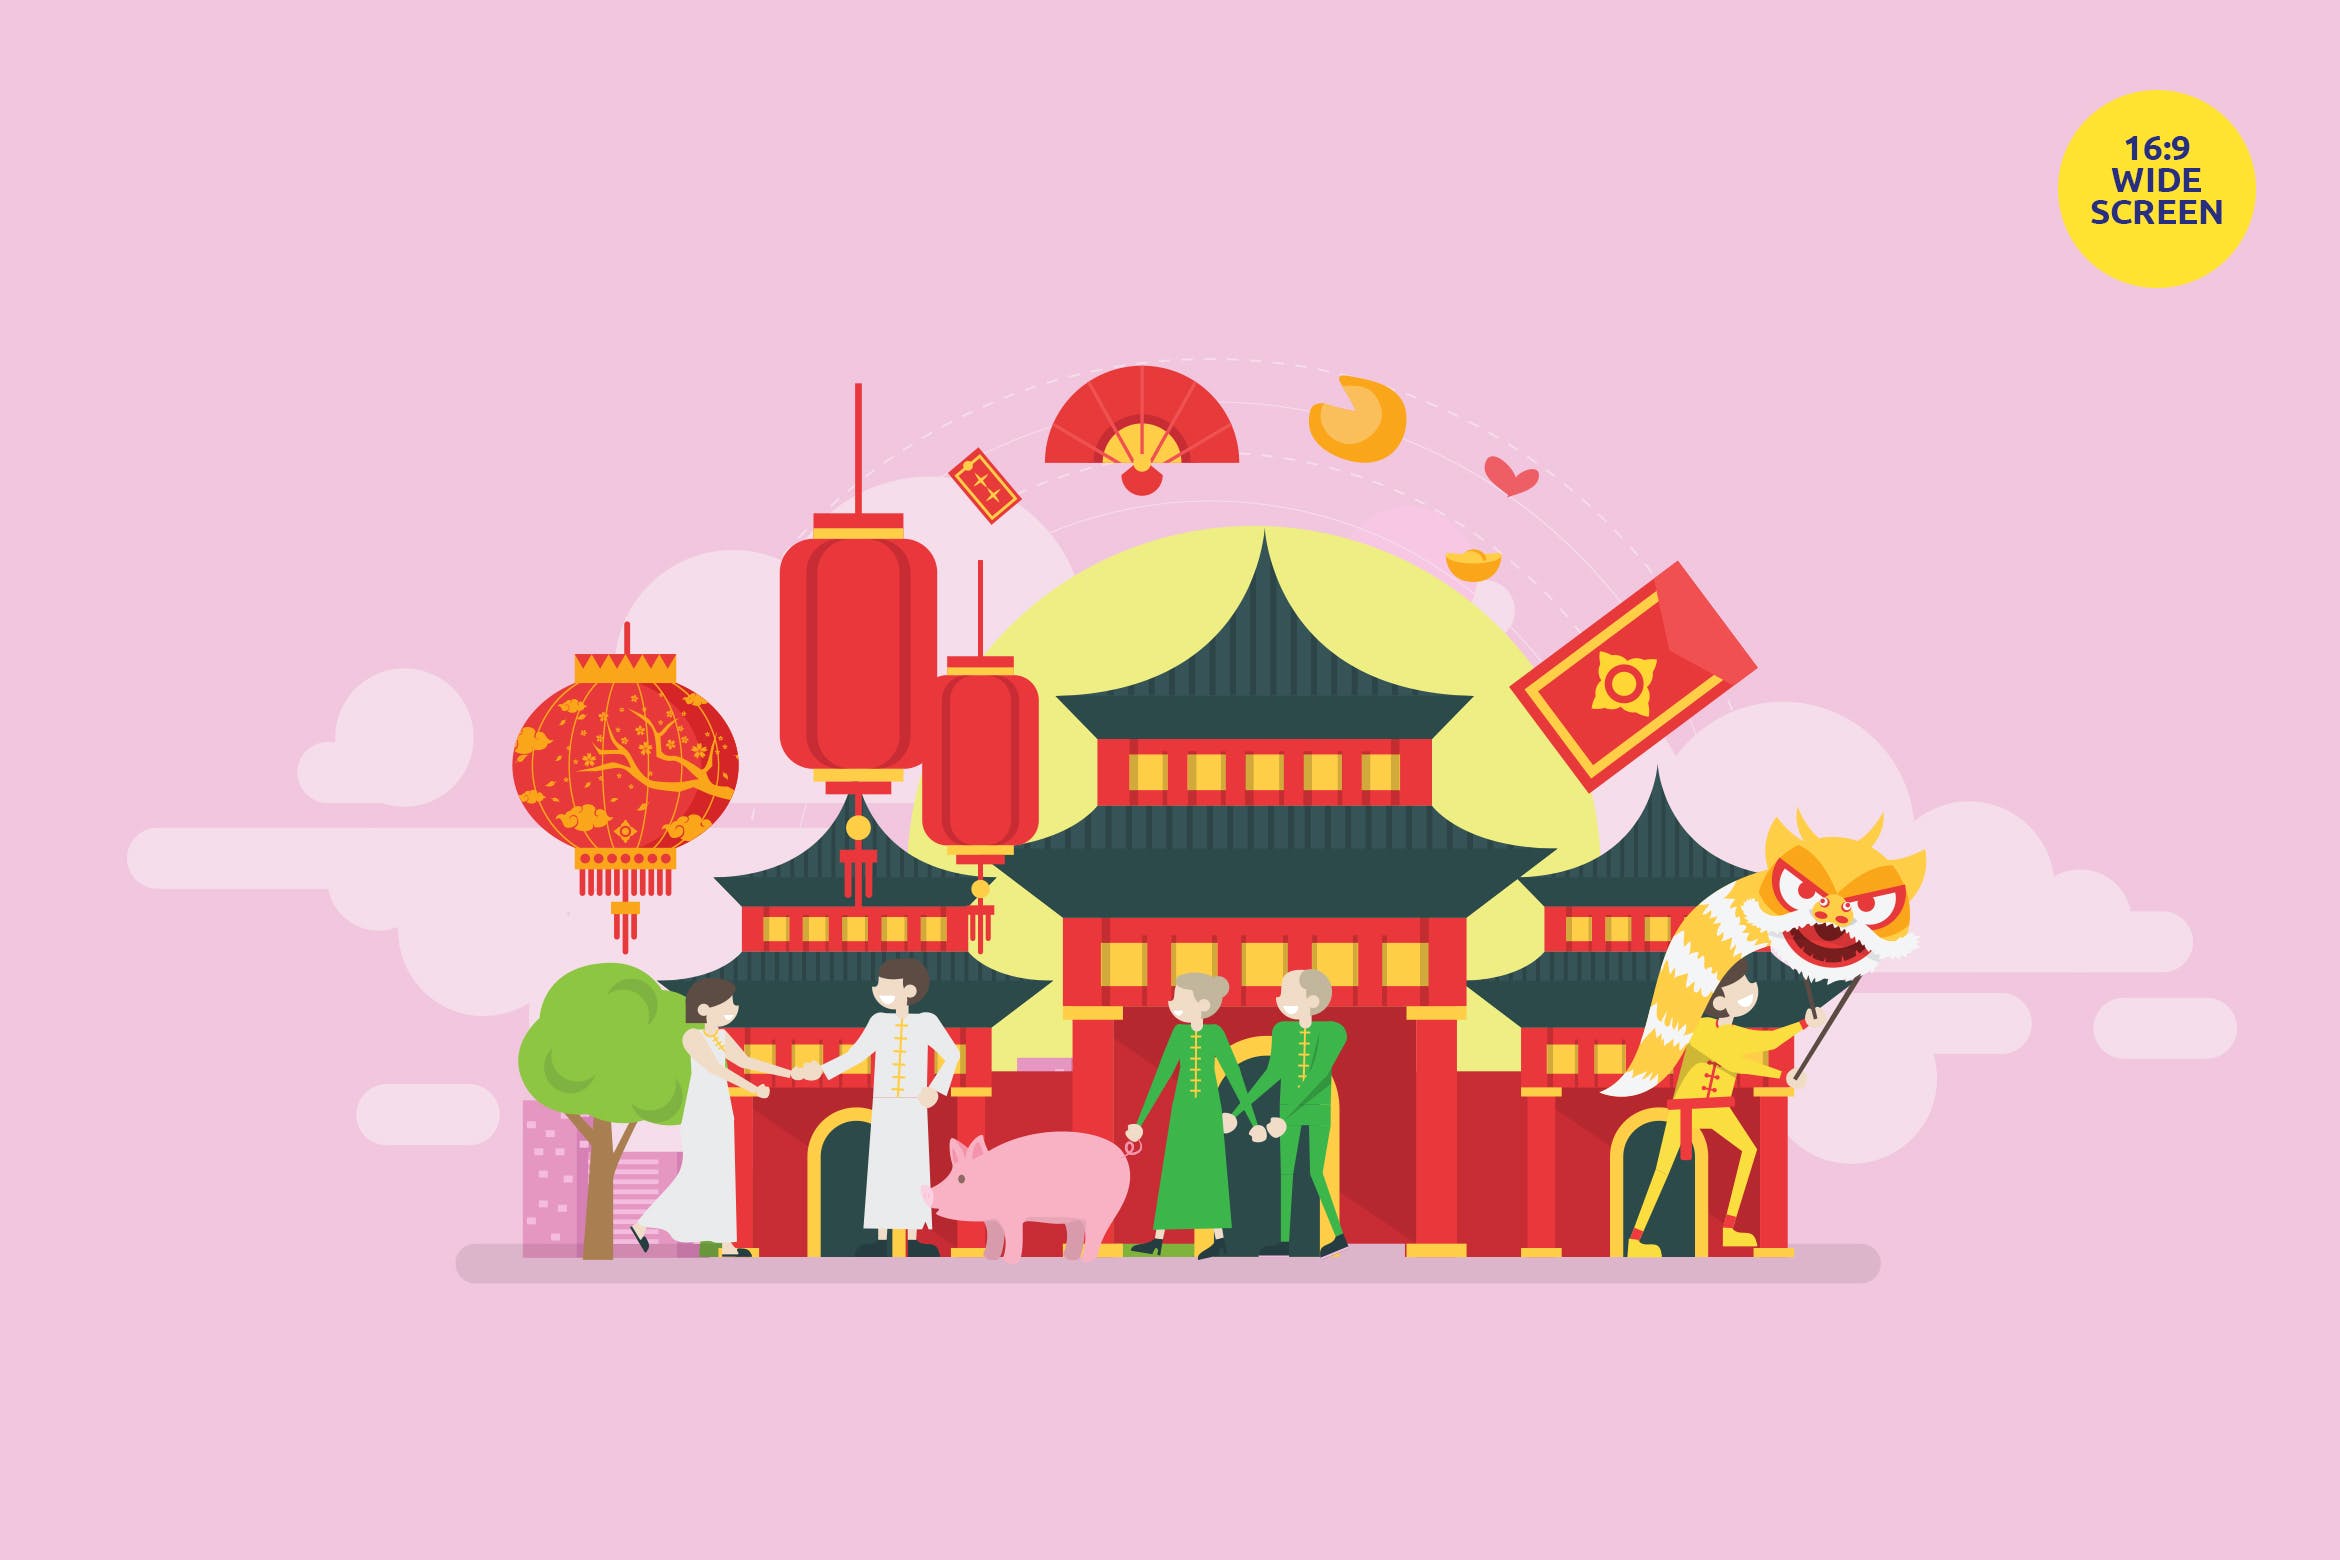 中国风新年主题矢量概念插画素材 Chinese New Year Vector Concept Illustration插图